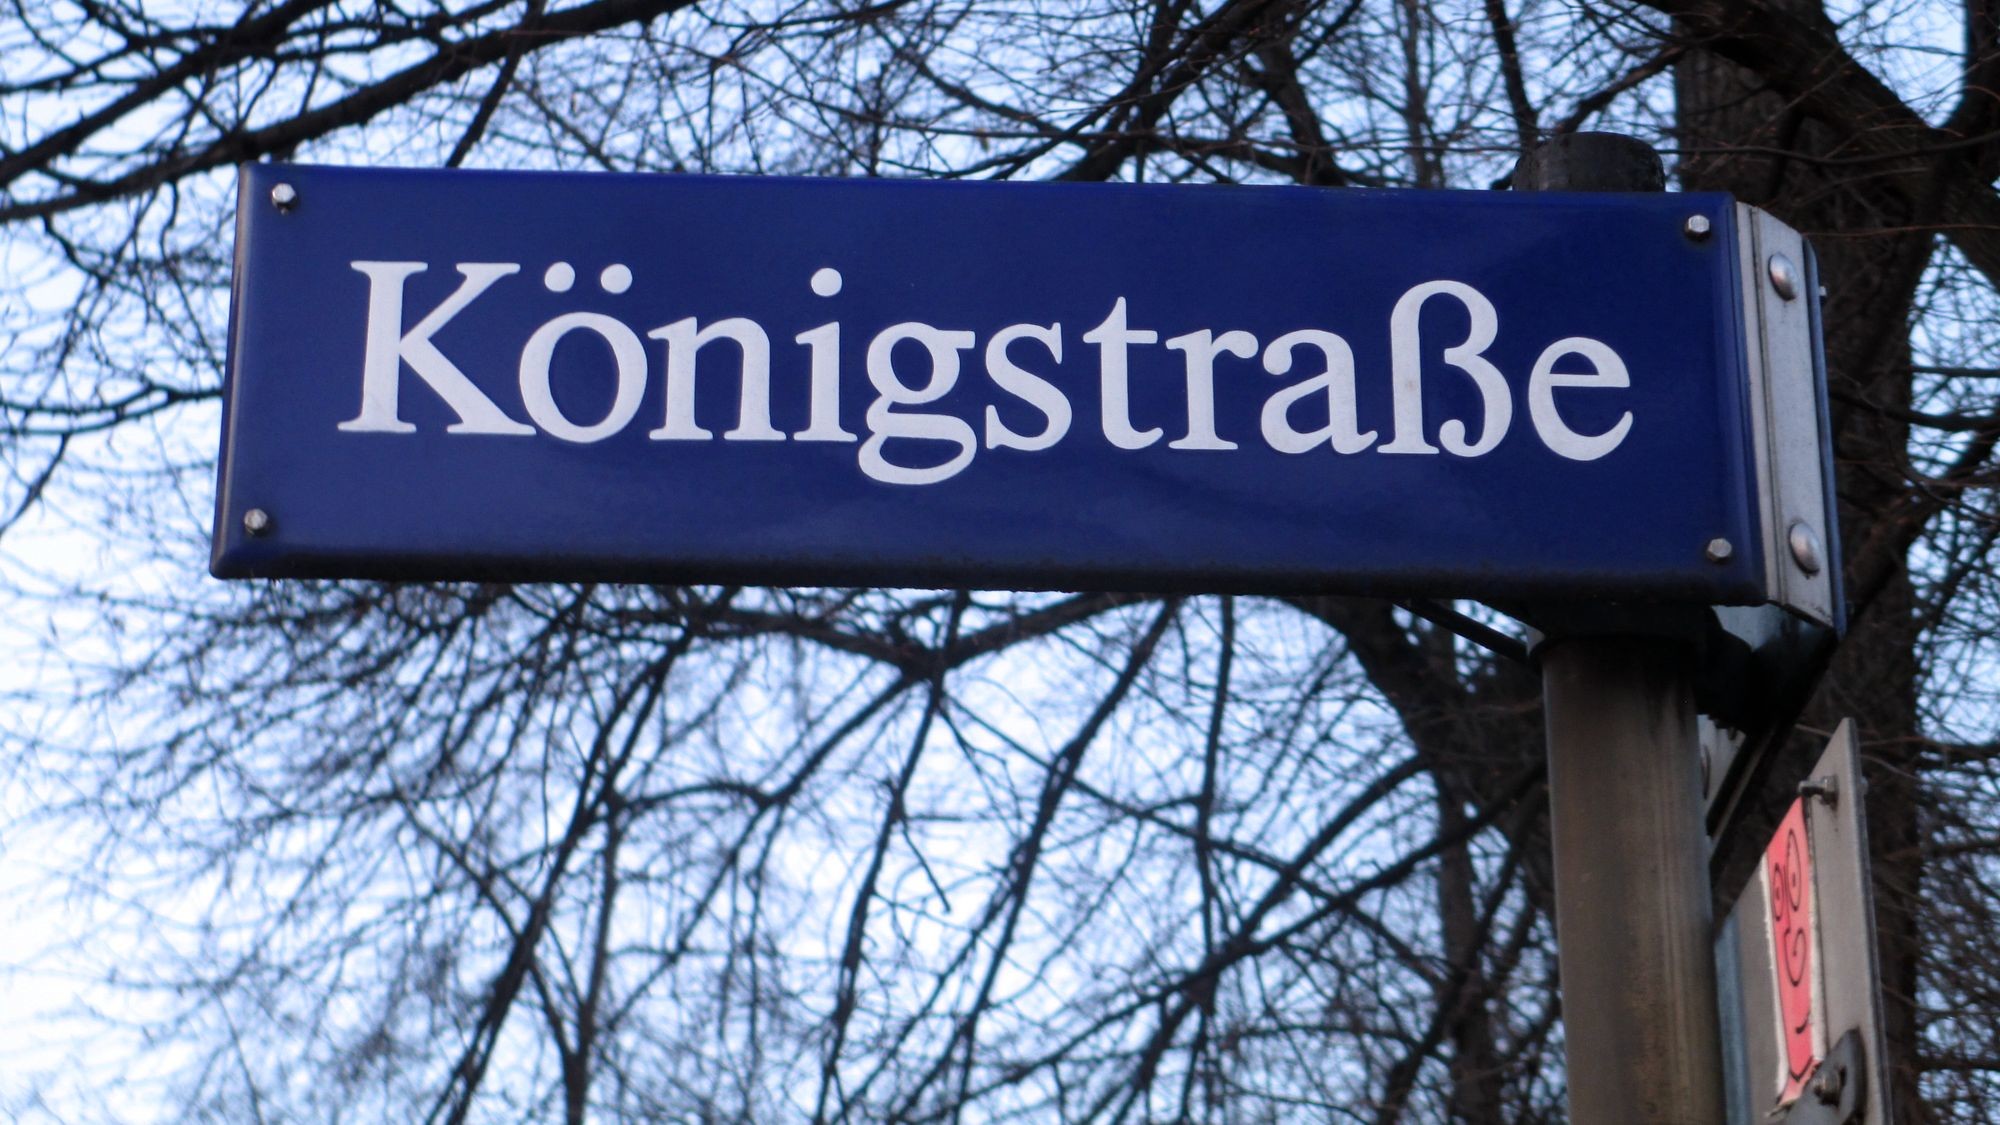 Die Königstraße als barockes Prachtviertel von August dem Starken befohlen.